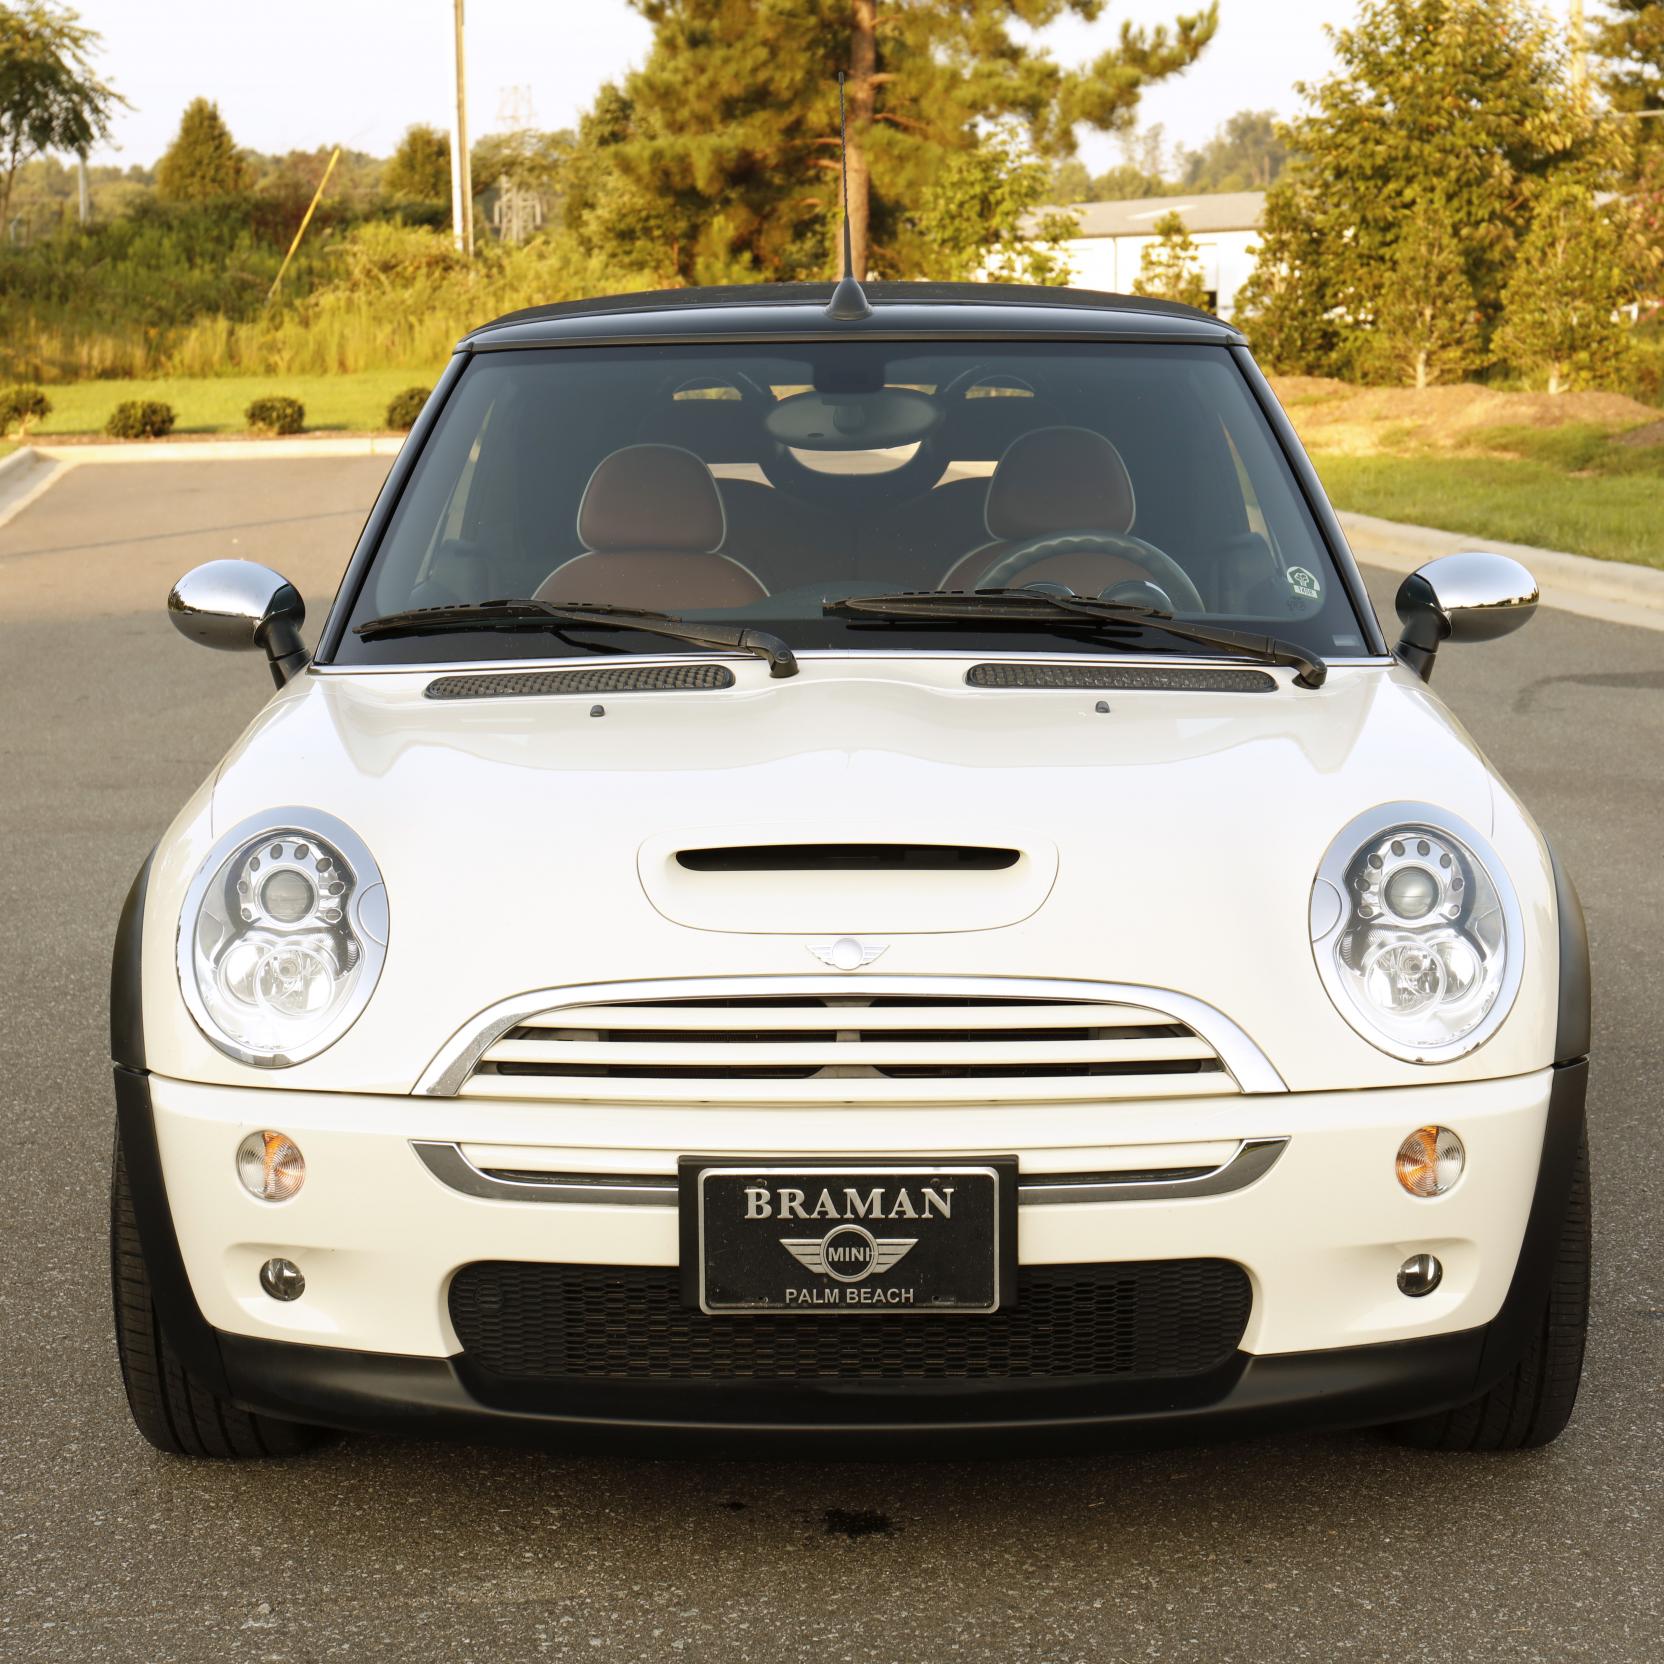  CarLashes® for Mini Cooper (2007-present) - Car